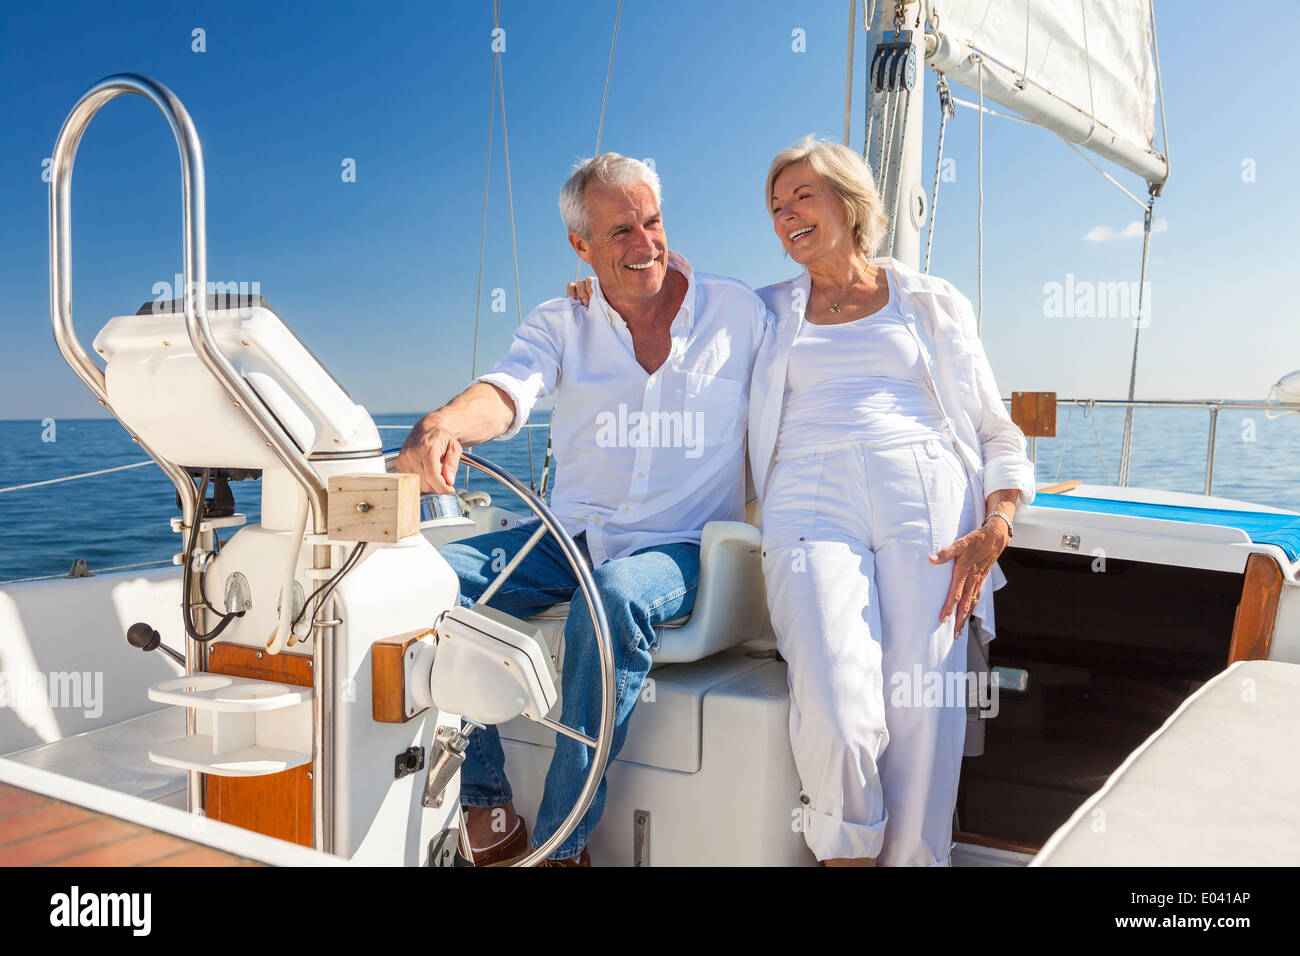 Ein glückliches senior paar lachen, haben Spaß am Steuer eine Yacht oder ein Segel Boot auf einem ruhigen blauen Meer segeln Stockfoto